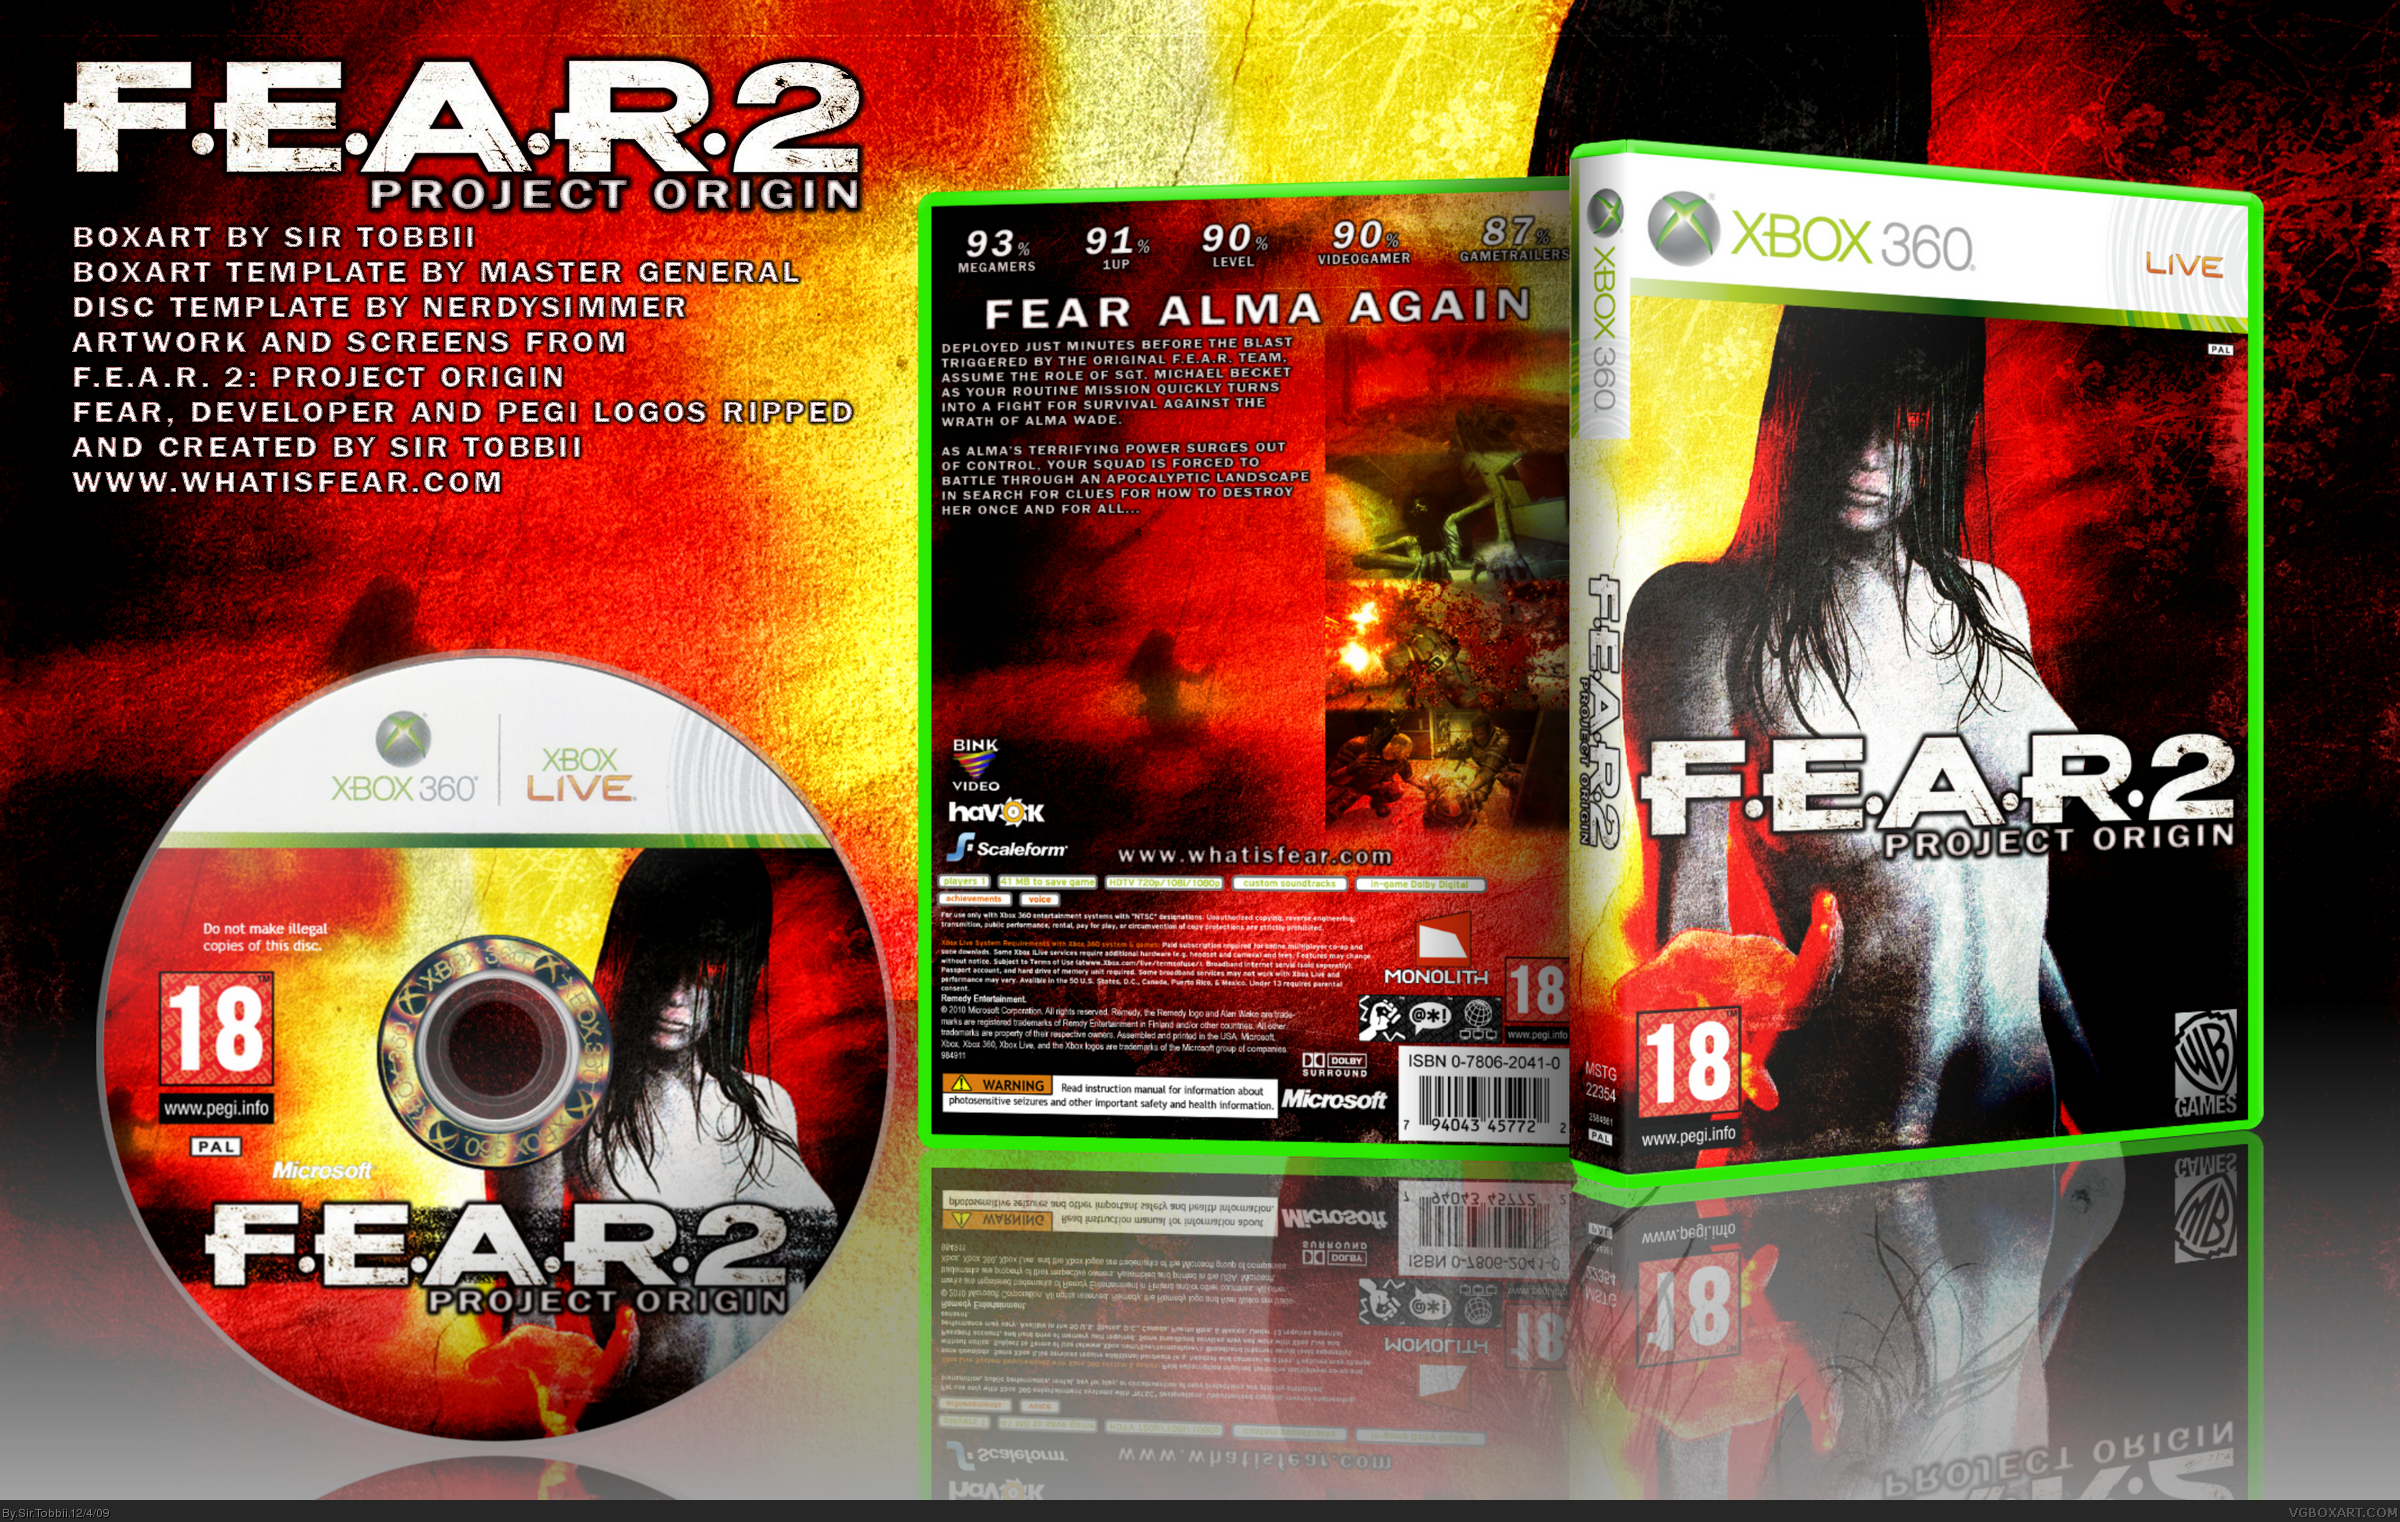 F.E.A.R. 2 Project Origin box cover